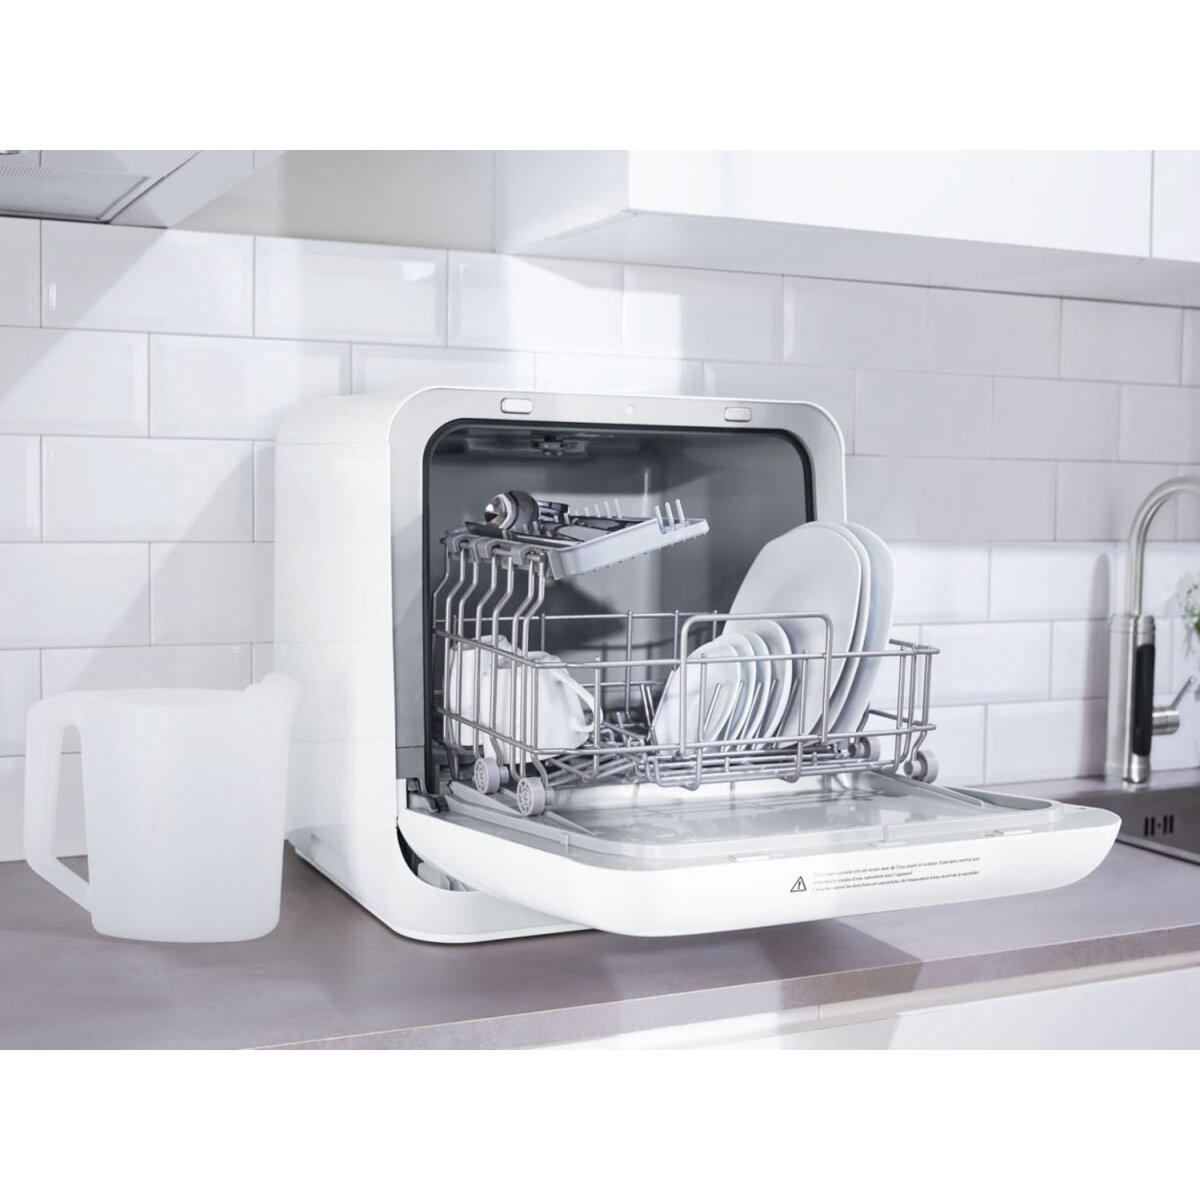 B-Ware 860 gut, Silvercrest € 144,99 »SGW A1« - Tools Wassertank Geschirrspülmaschine mit Kitchen